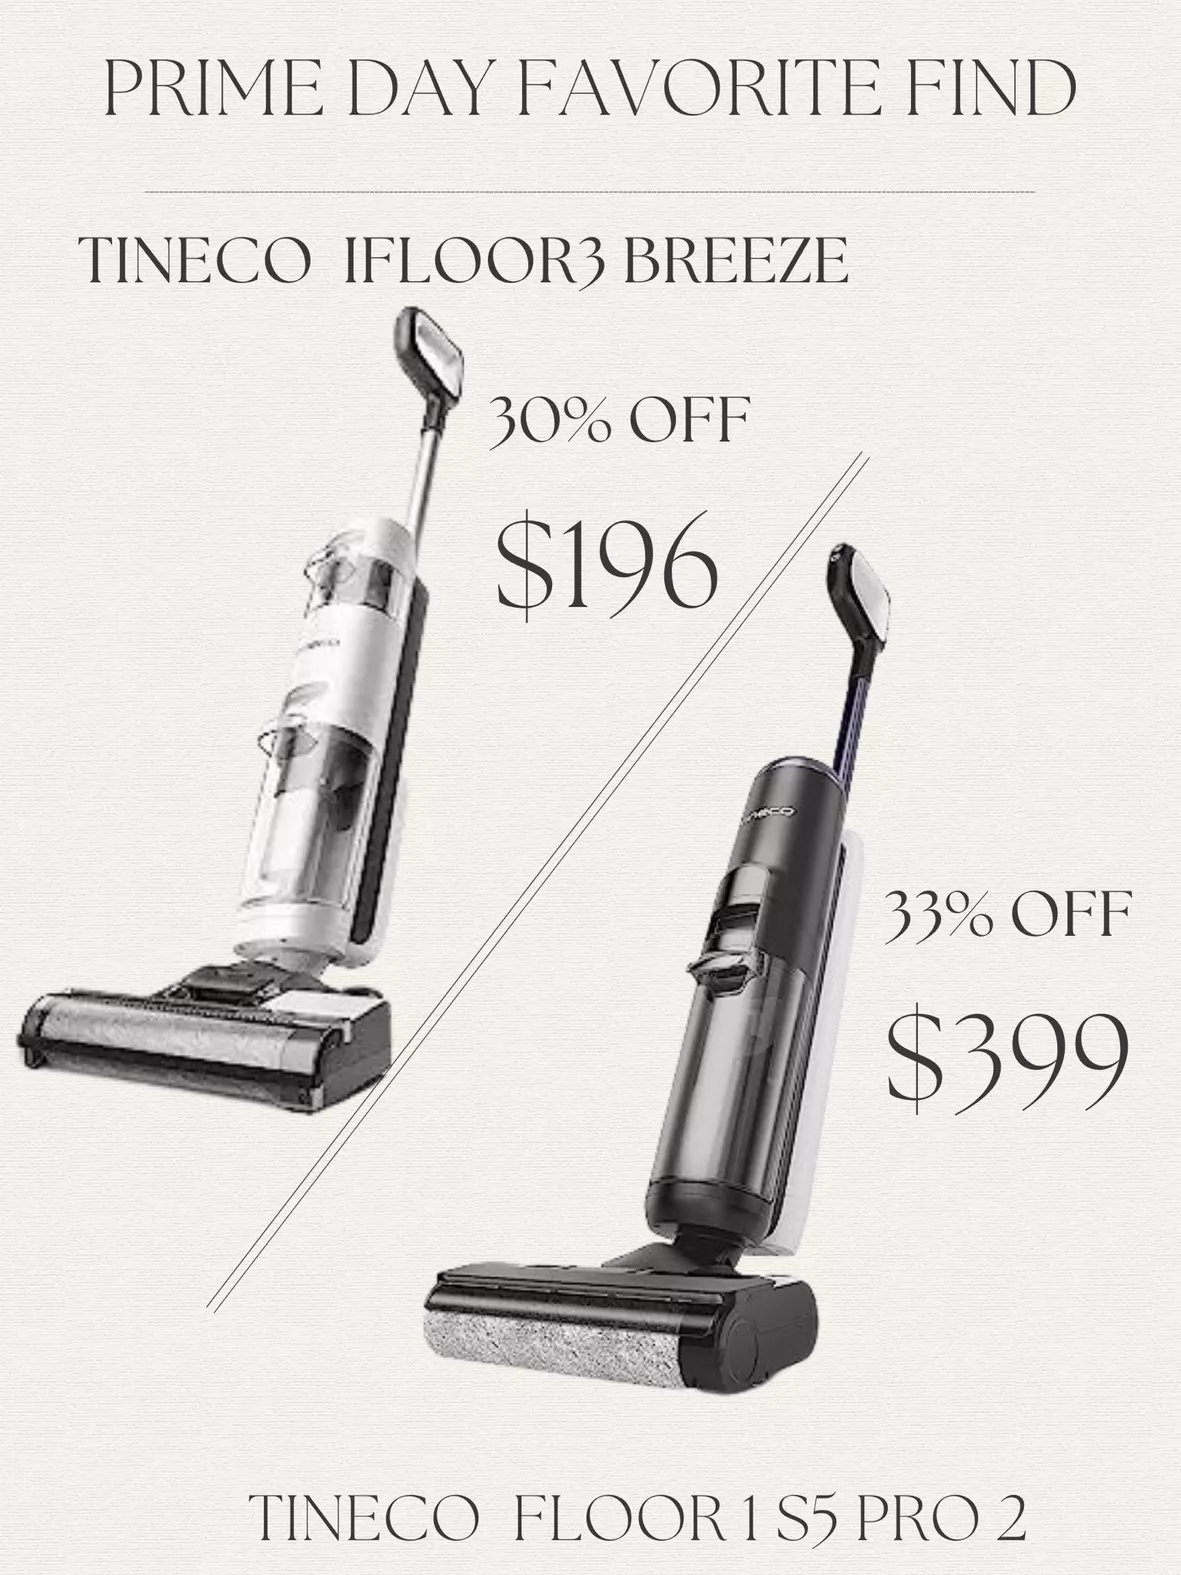 For Tineco Floor One S3 Breeze/iFloor 3/iFloor Breeze Vacuum